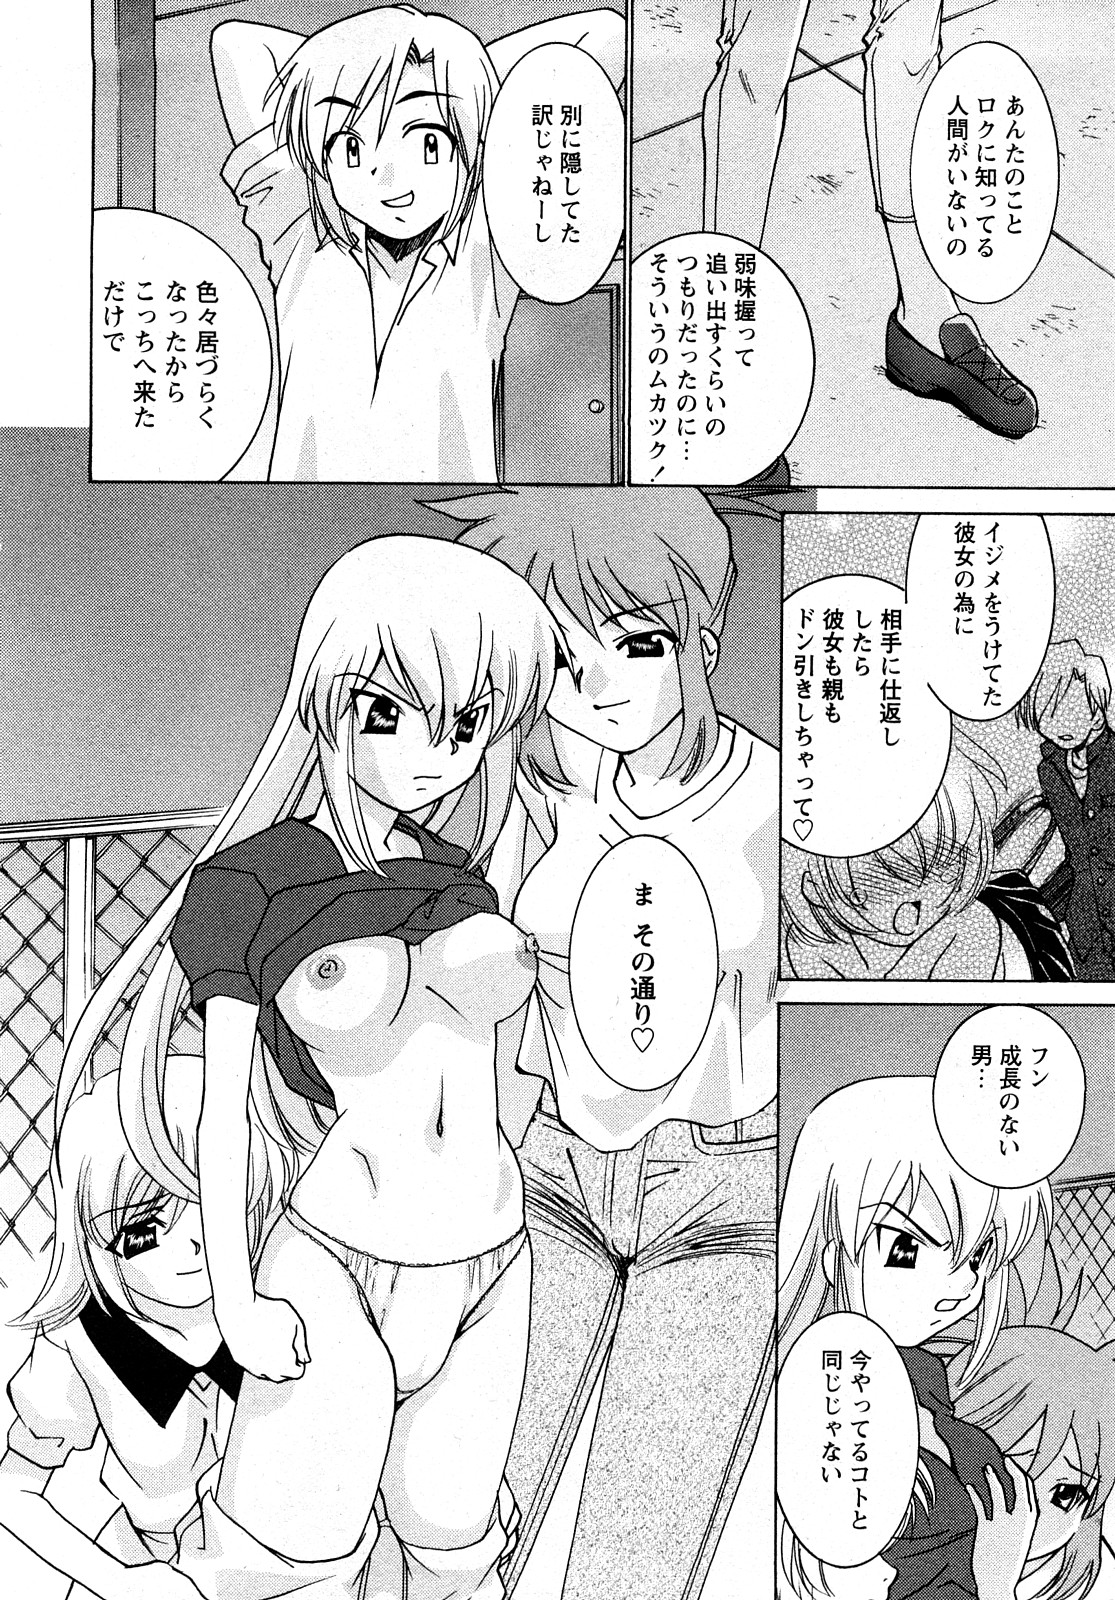 【Hマガジン】コミックMoeMax-Vol.011 [2008-04]